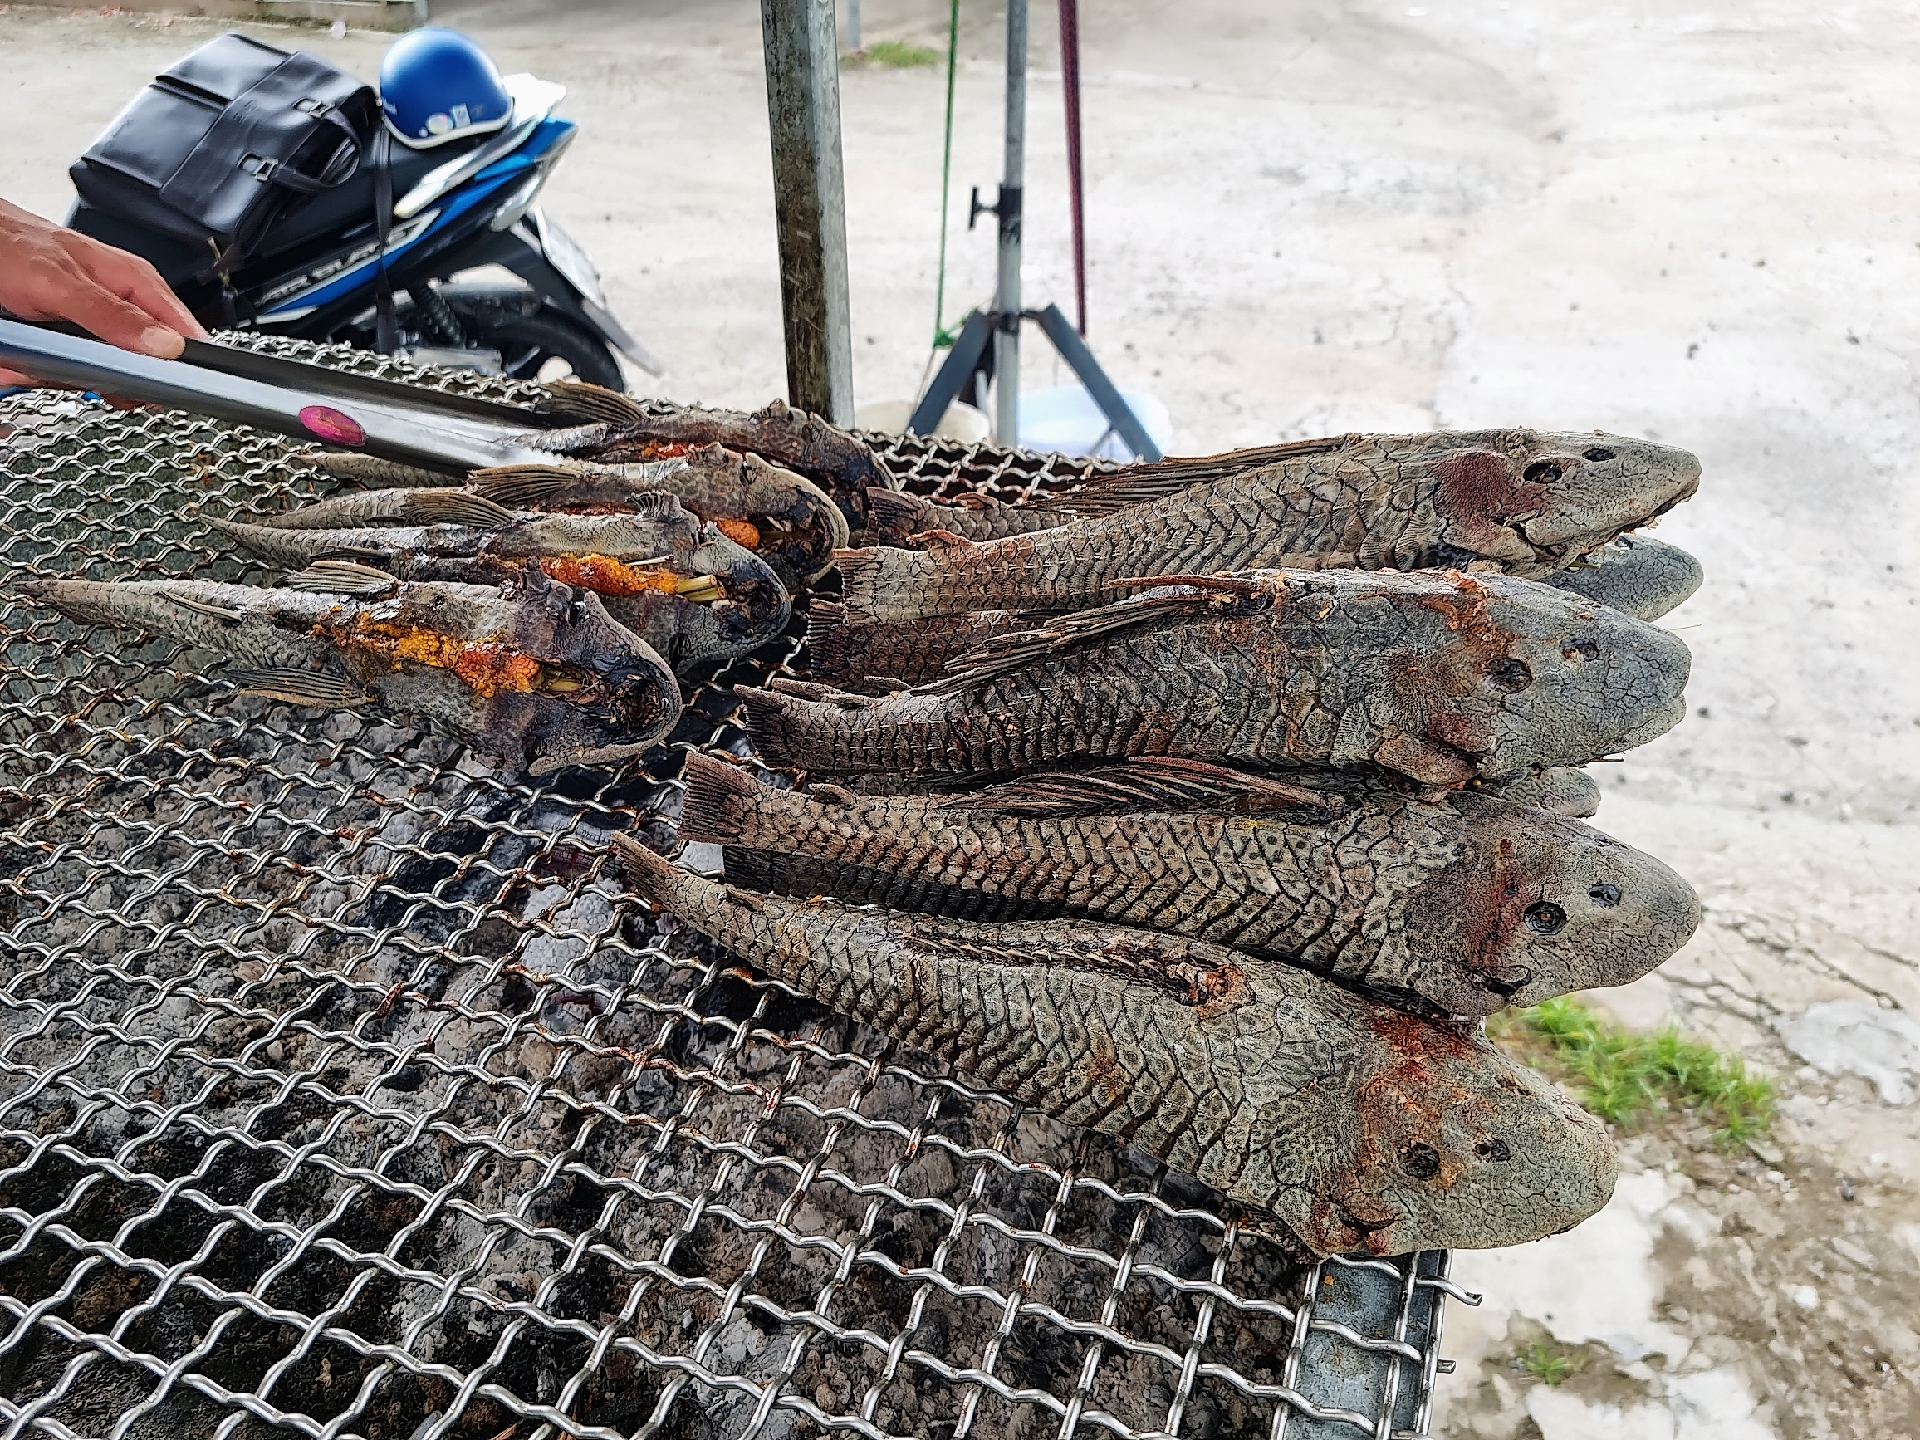 Để đảm bảo cá luôn nóng và độ ngon thì mỗi lần nướng chỉ từ 20 - 30 con. Ảnh: Hoàng Lộc.